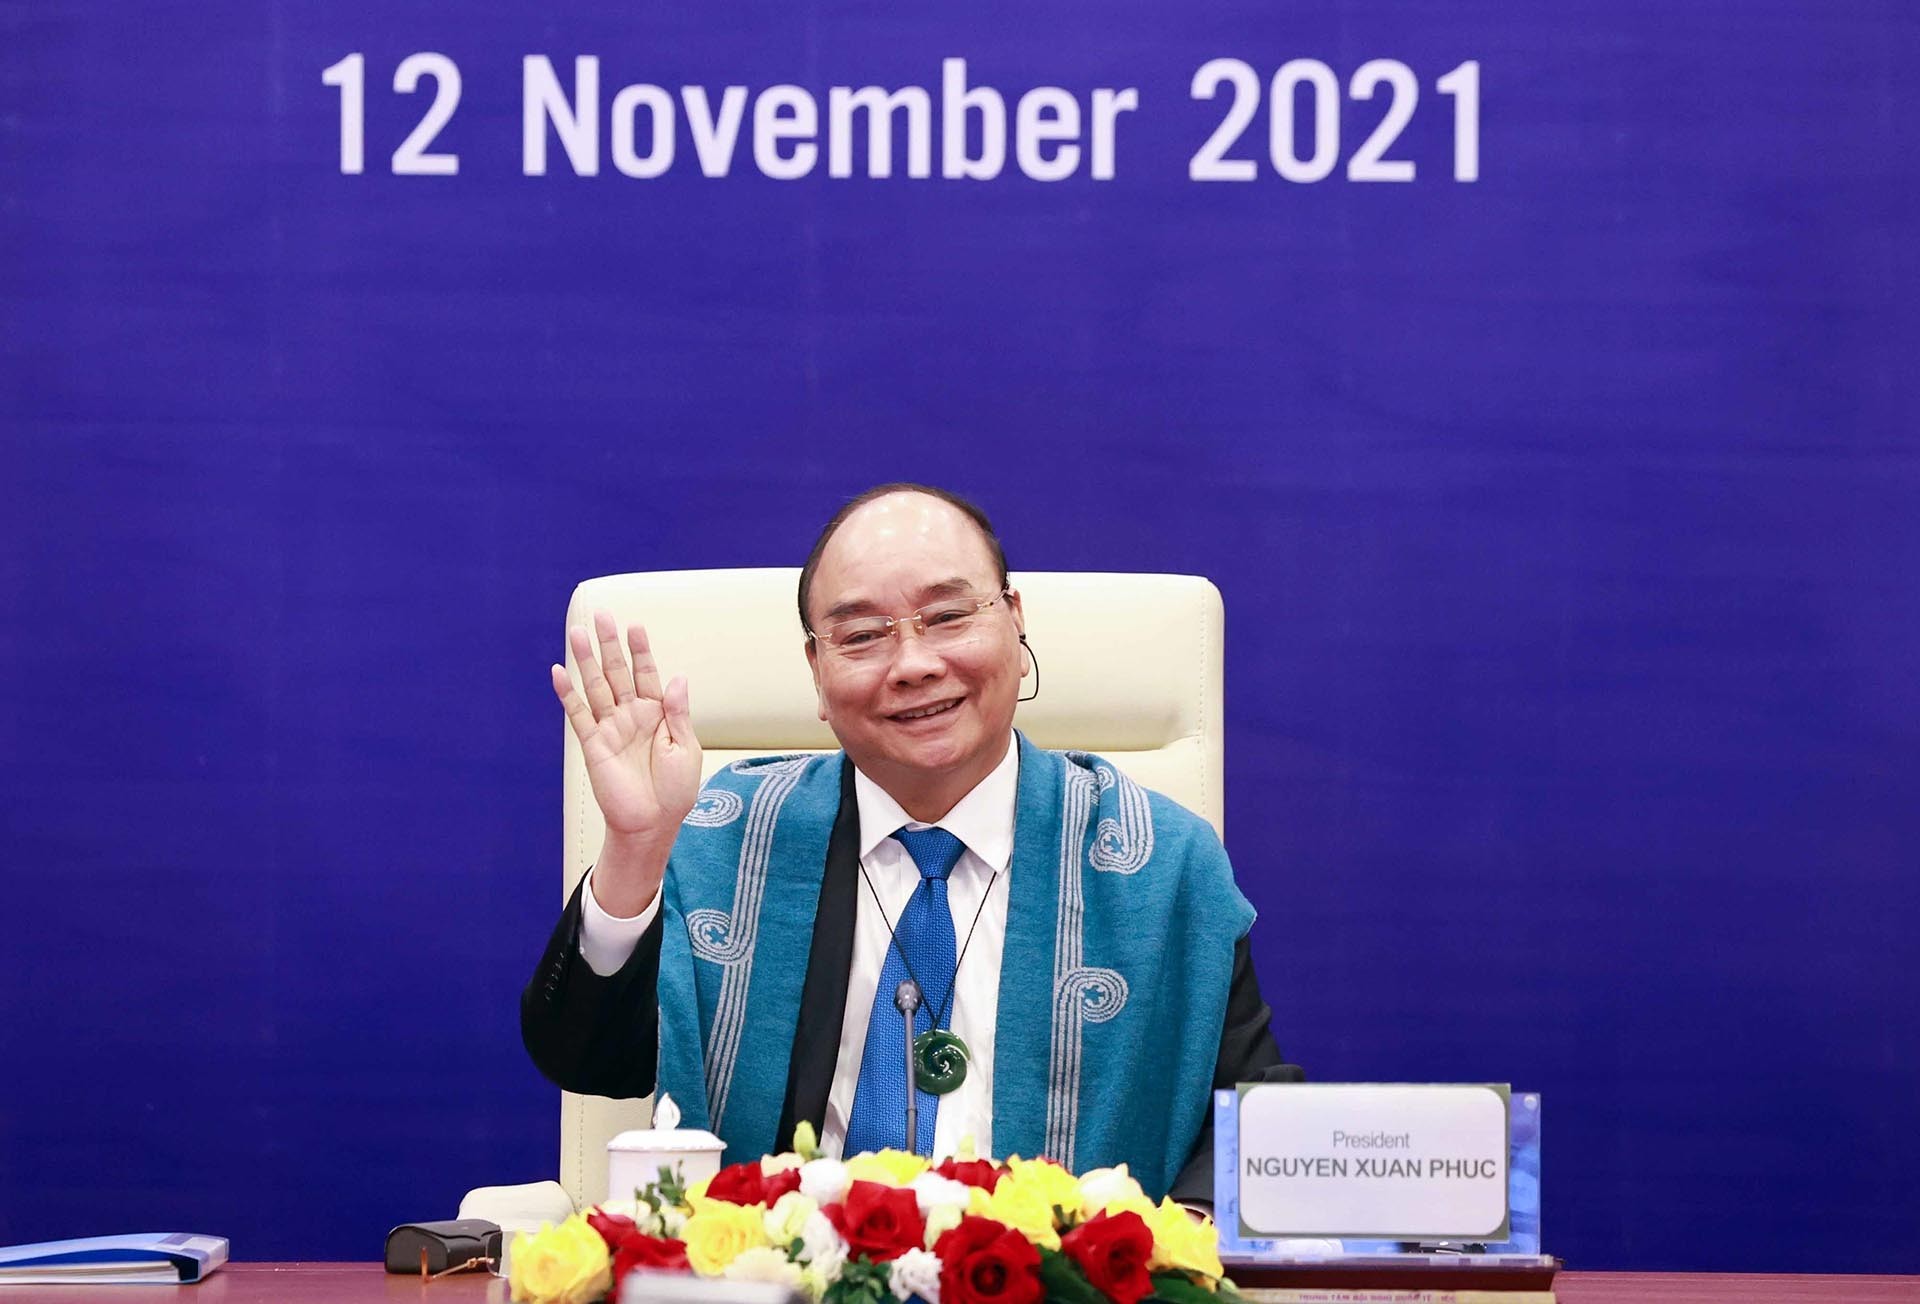 Chủ tịch nước Nguyễn Xuân Phúc dự Hội nghị các nhà Lãnh đạo kinh tế APEC lần thứ 28 theo hình thức trực tuyến. (Nguồn: TTXVN)